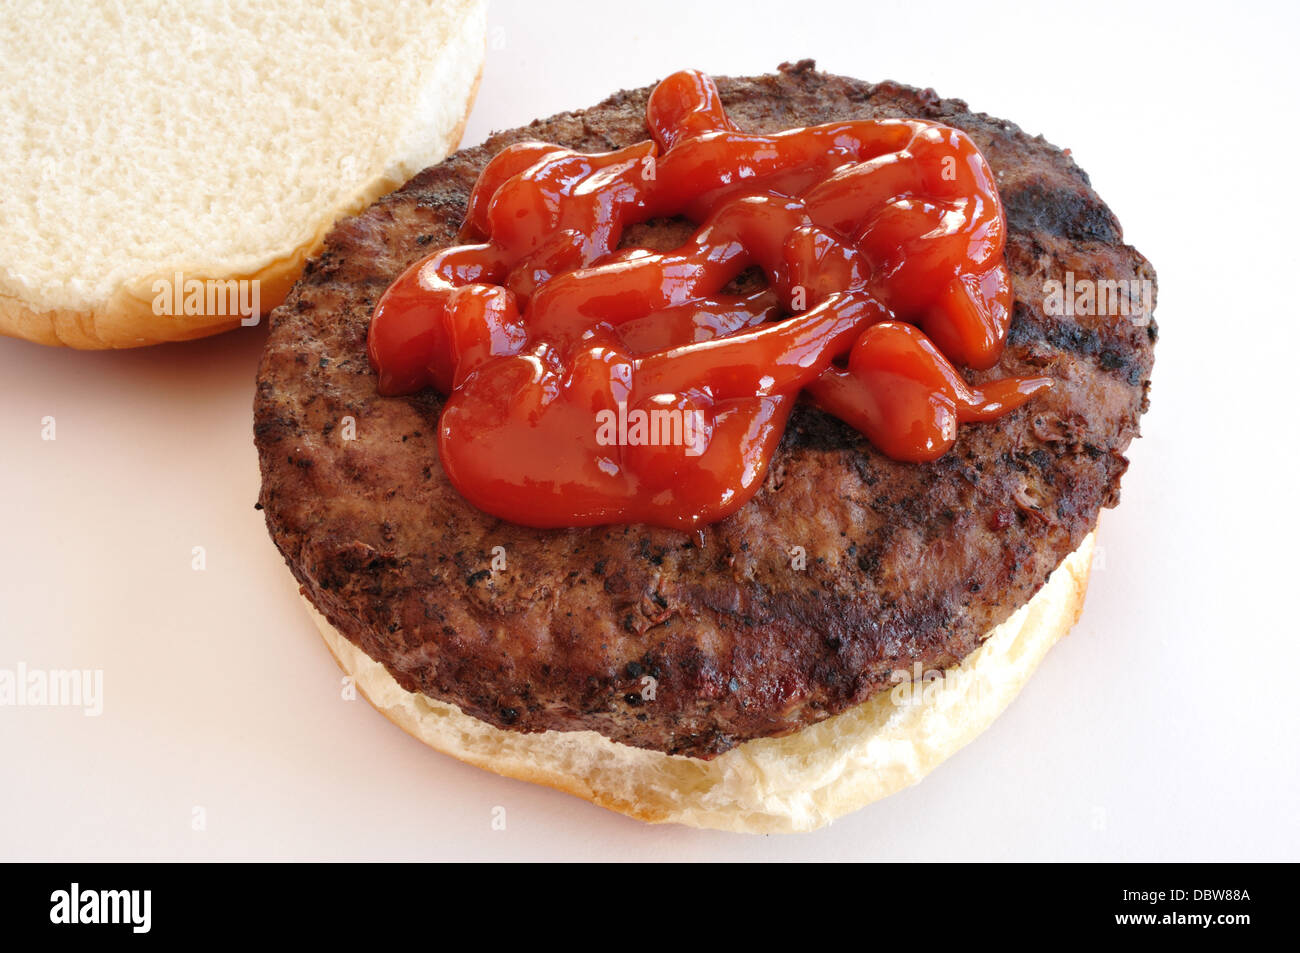 Hamburger alla griglia con salsa di pomodoro / Catsup / Ketchup su un bun / bap Foto Stock